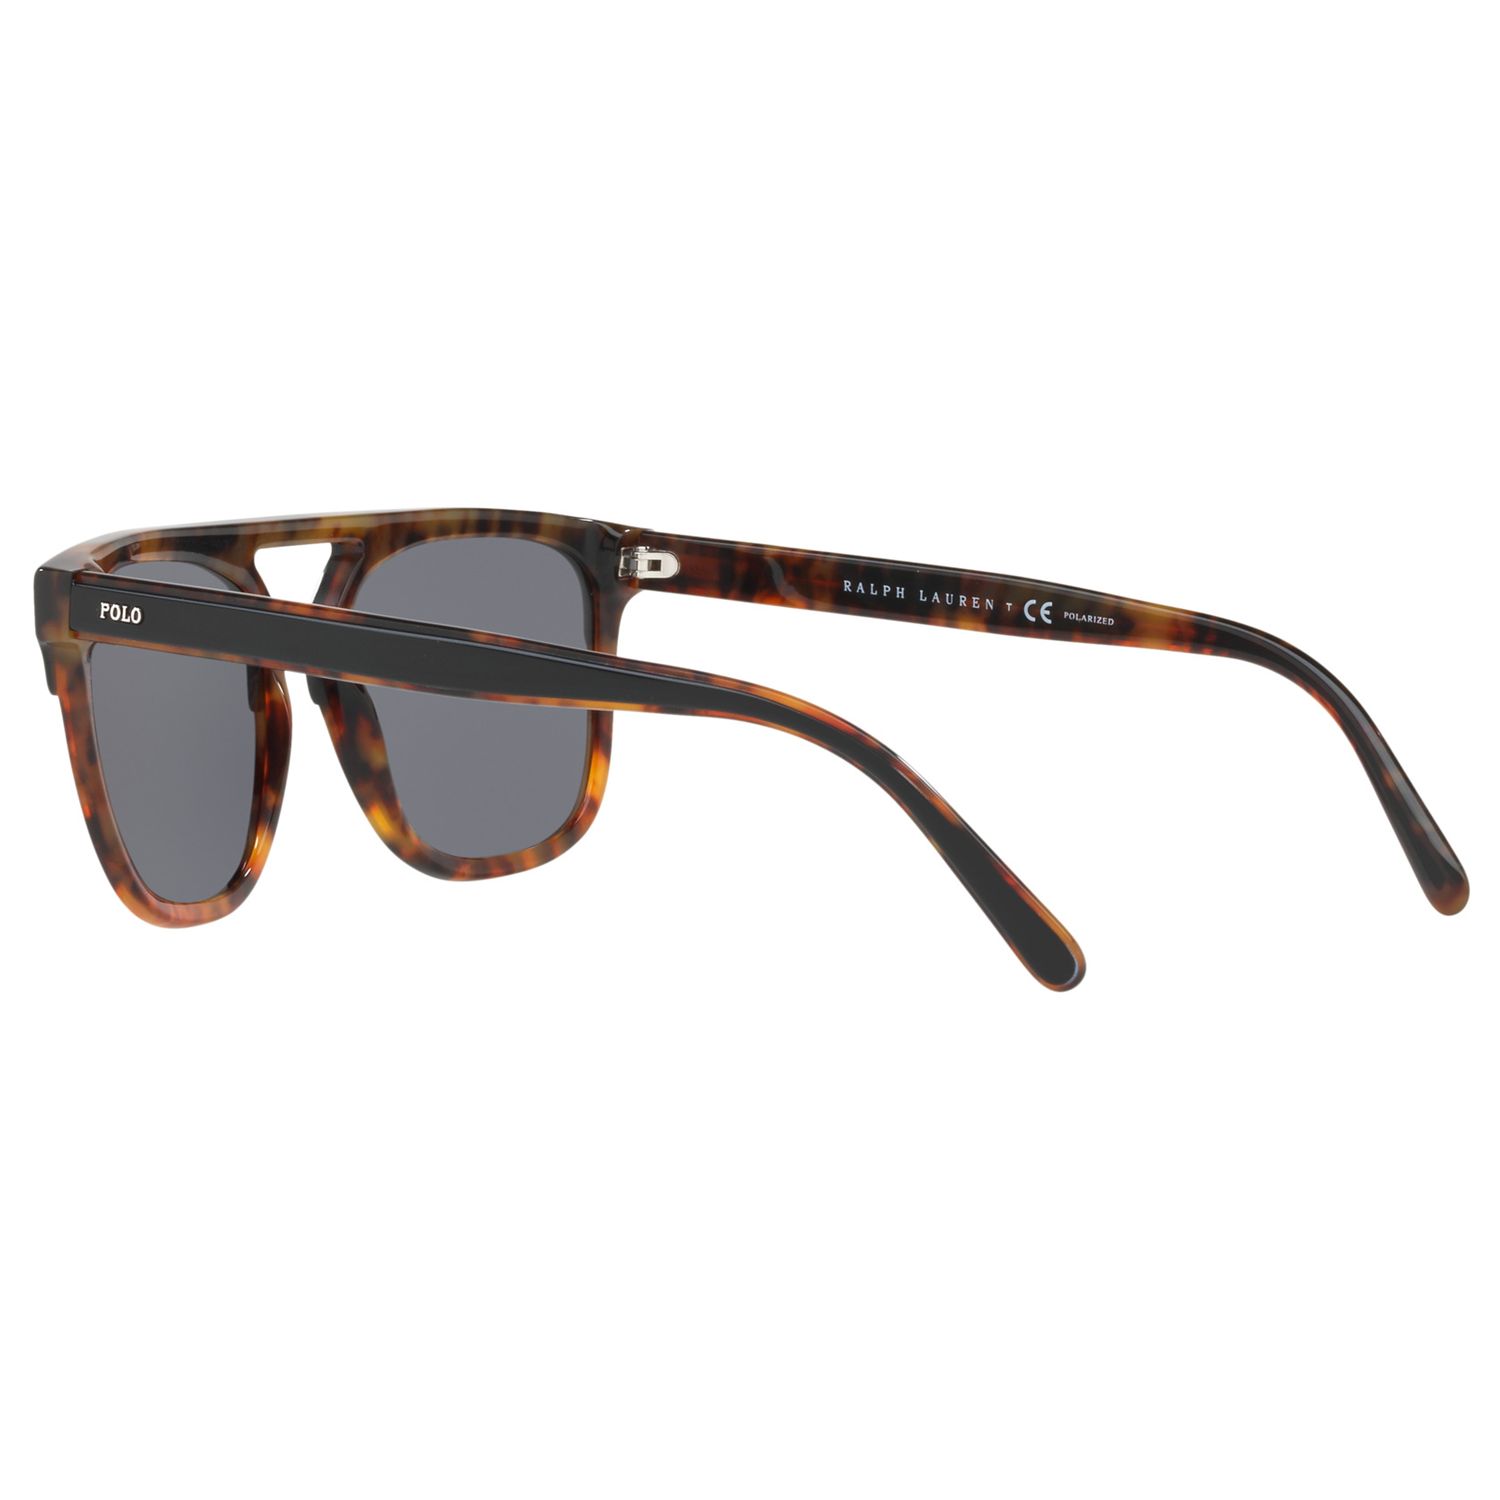 Polo Ralph Lauren PH4125 Men's Polarised D-Frame Sunglasses, Tortoise/Grey